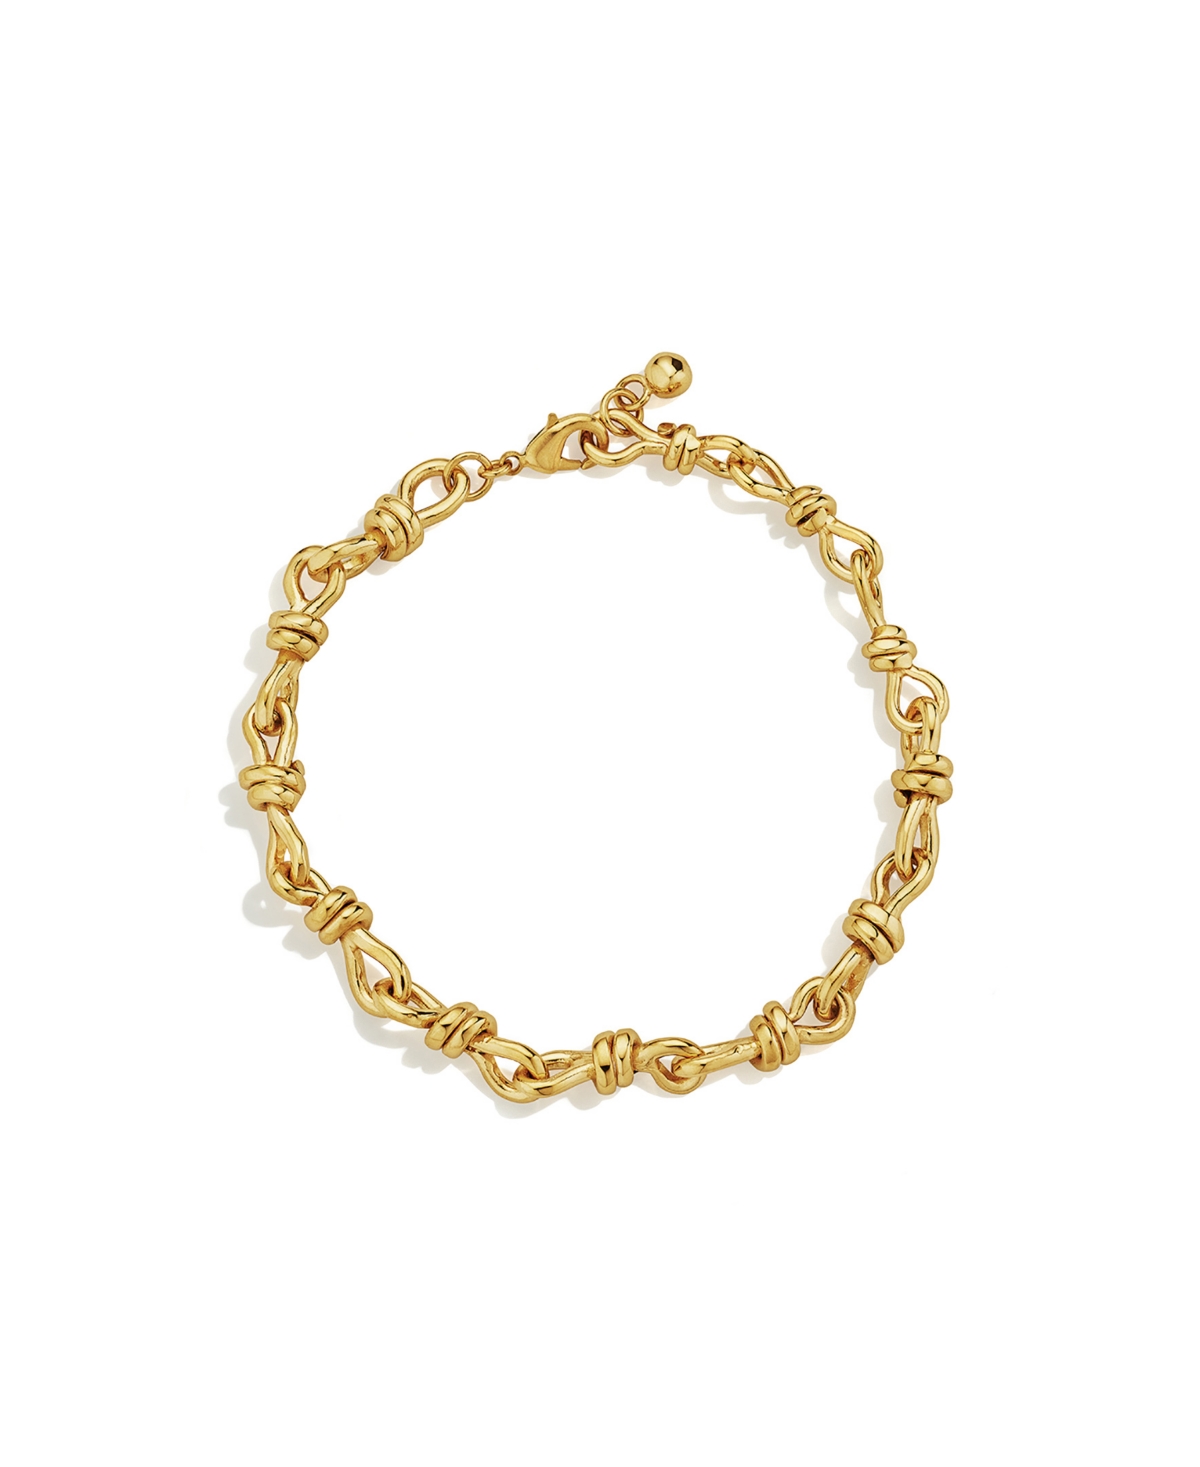 24K Gold-Plated Miji Link Bracelet - Gold